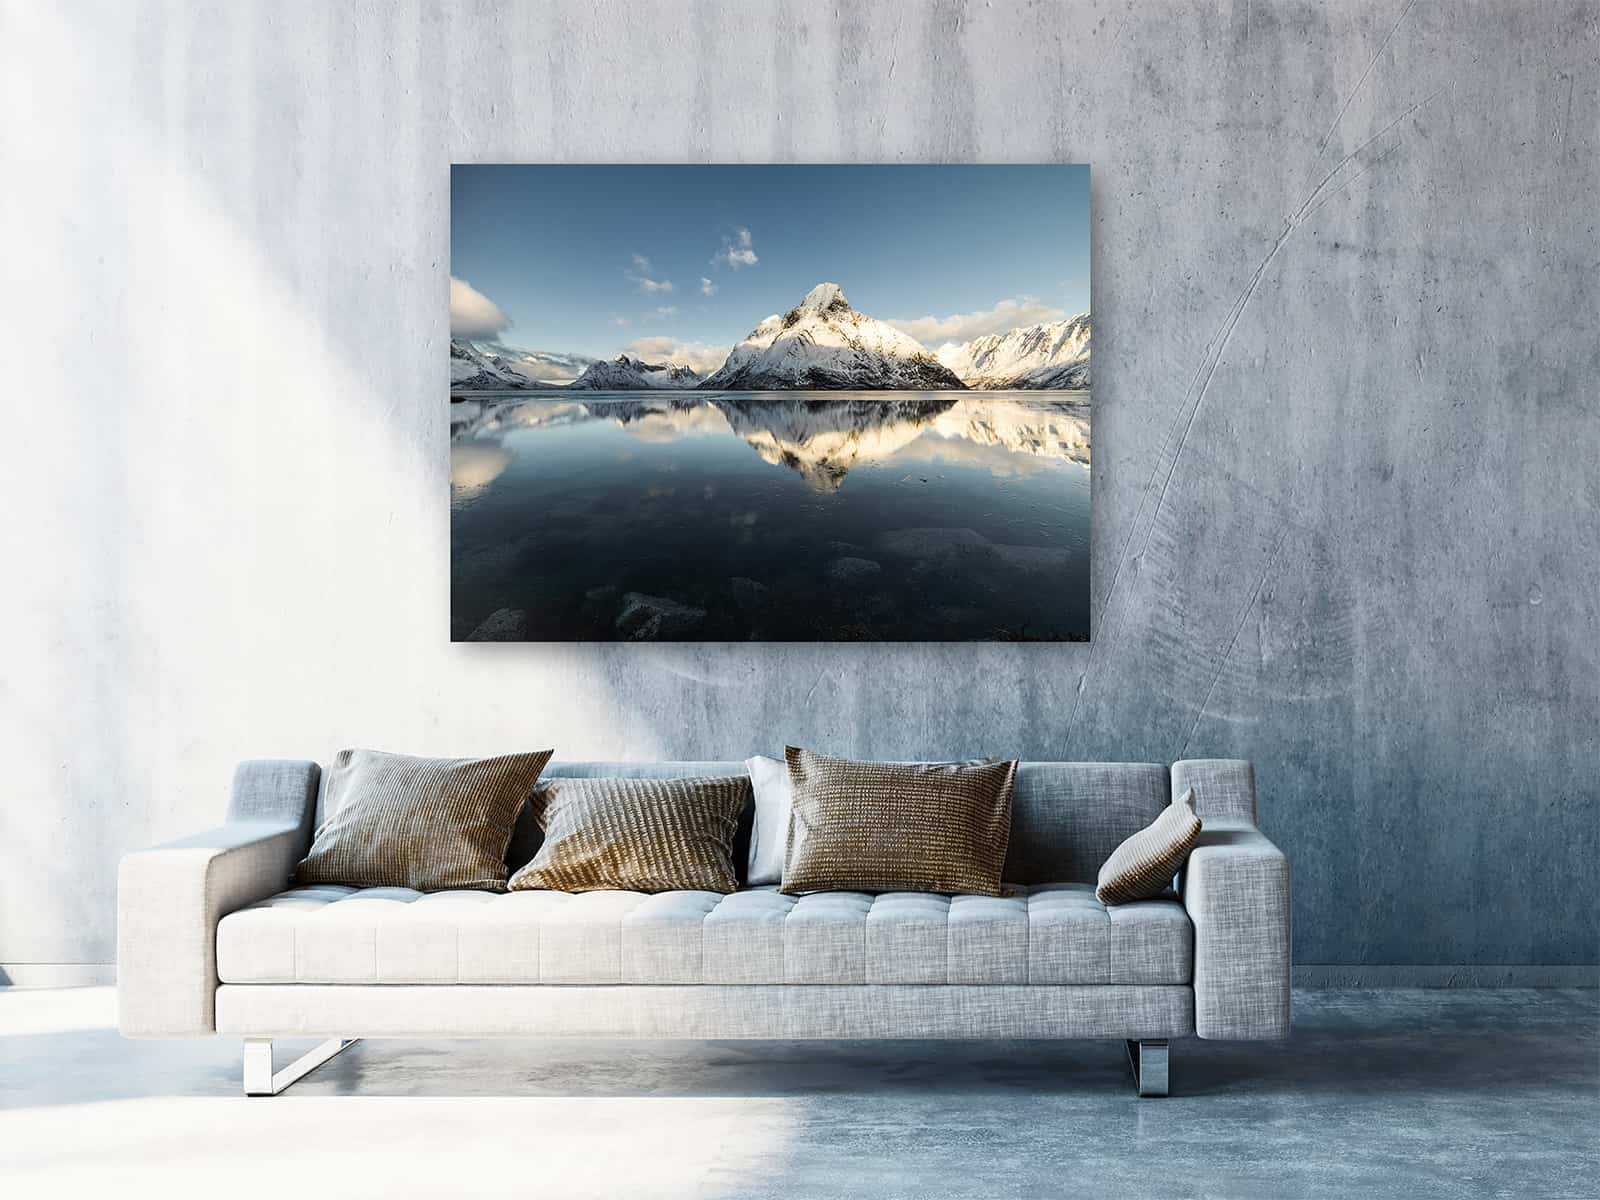 Der ChromaLuxe Print "Arctic Mountains" hängt in einem hellen, freundlichem Raum. Über der modernen Couch kommt die Landschaftsfotografie besonders gut zur Geltung.